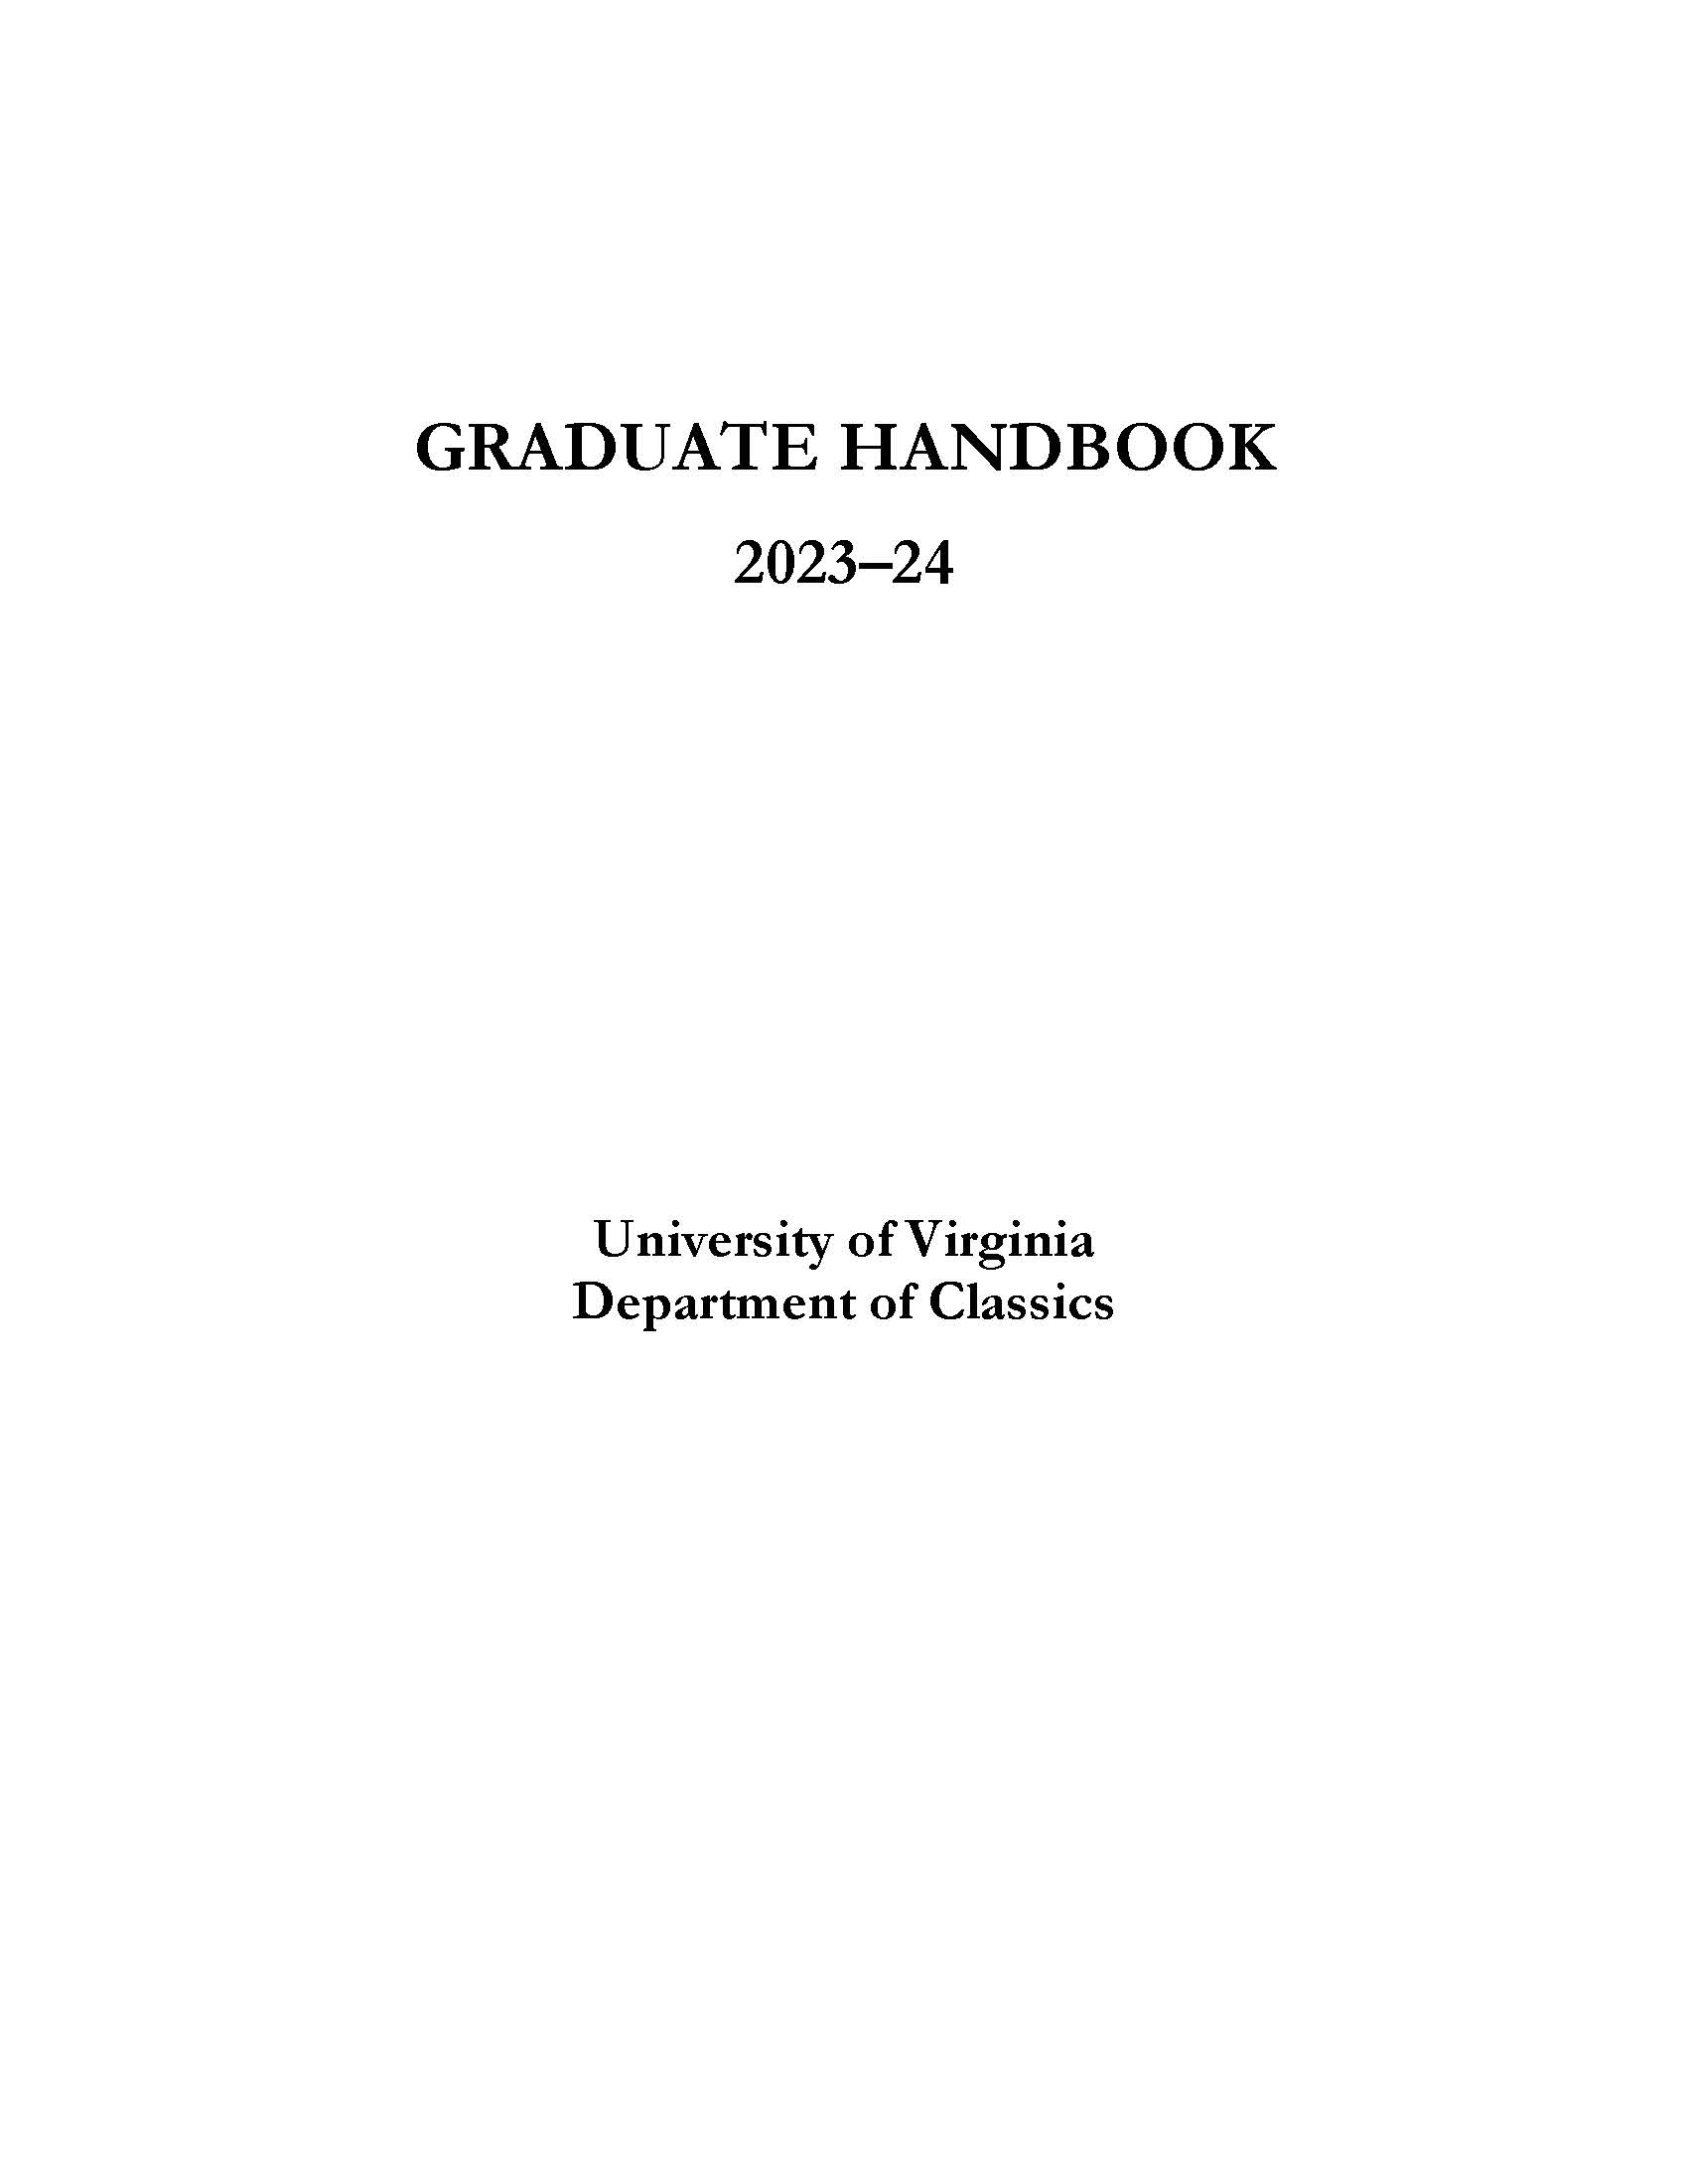 Grad Handbook